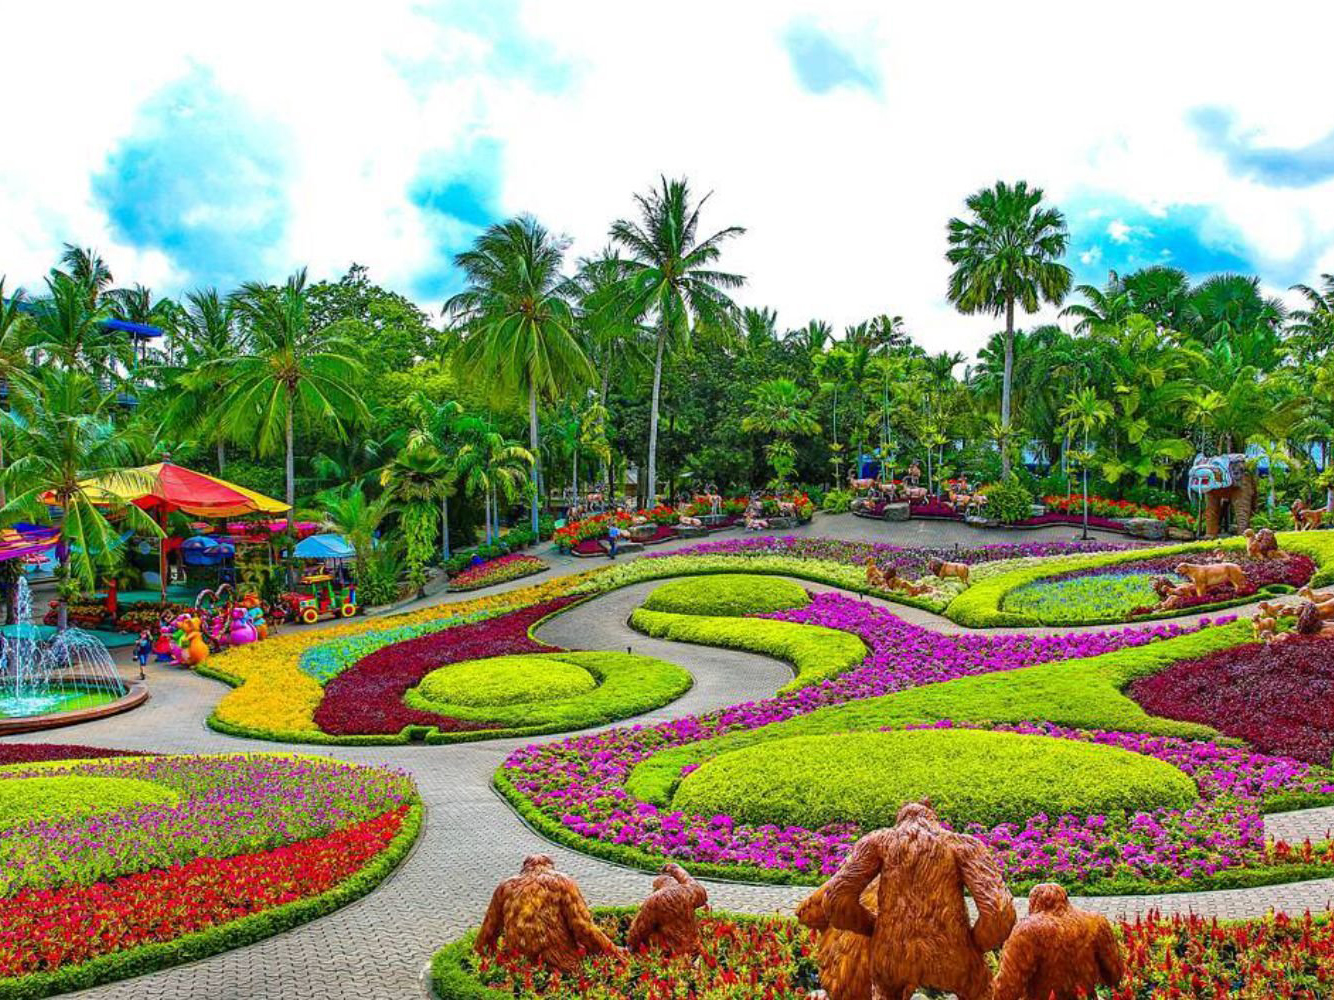 حدائق شتوية حول العالم - حديقة نونج نوش للنباتات الاستوائية، تايلاند